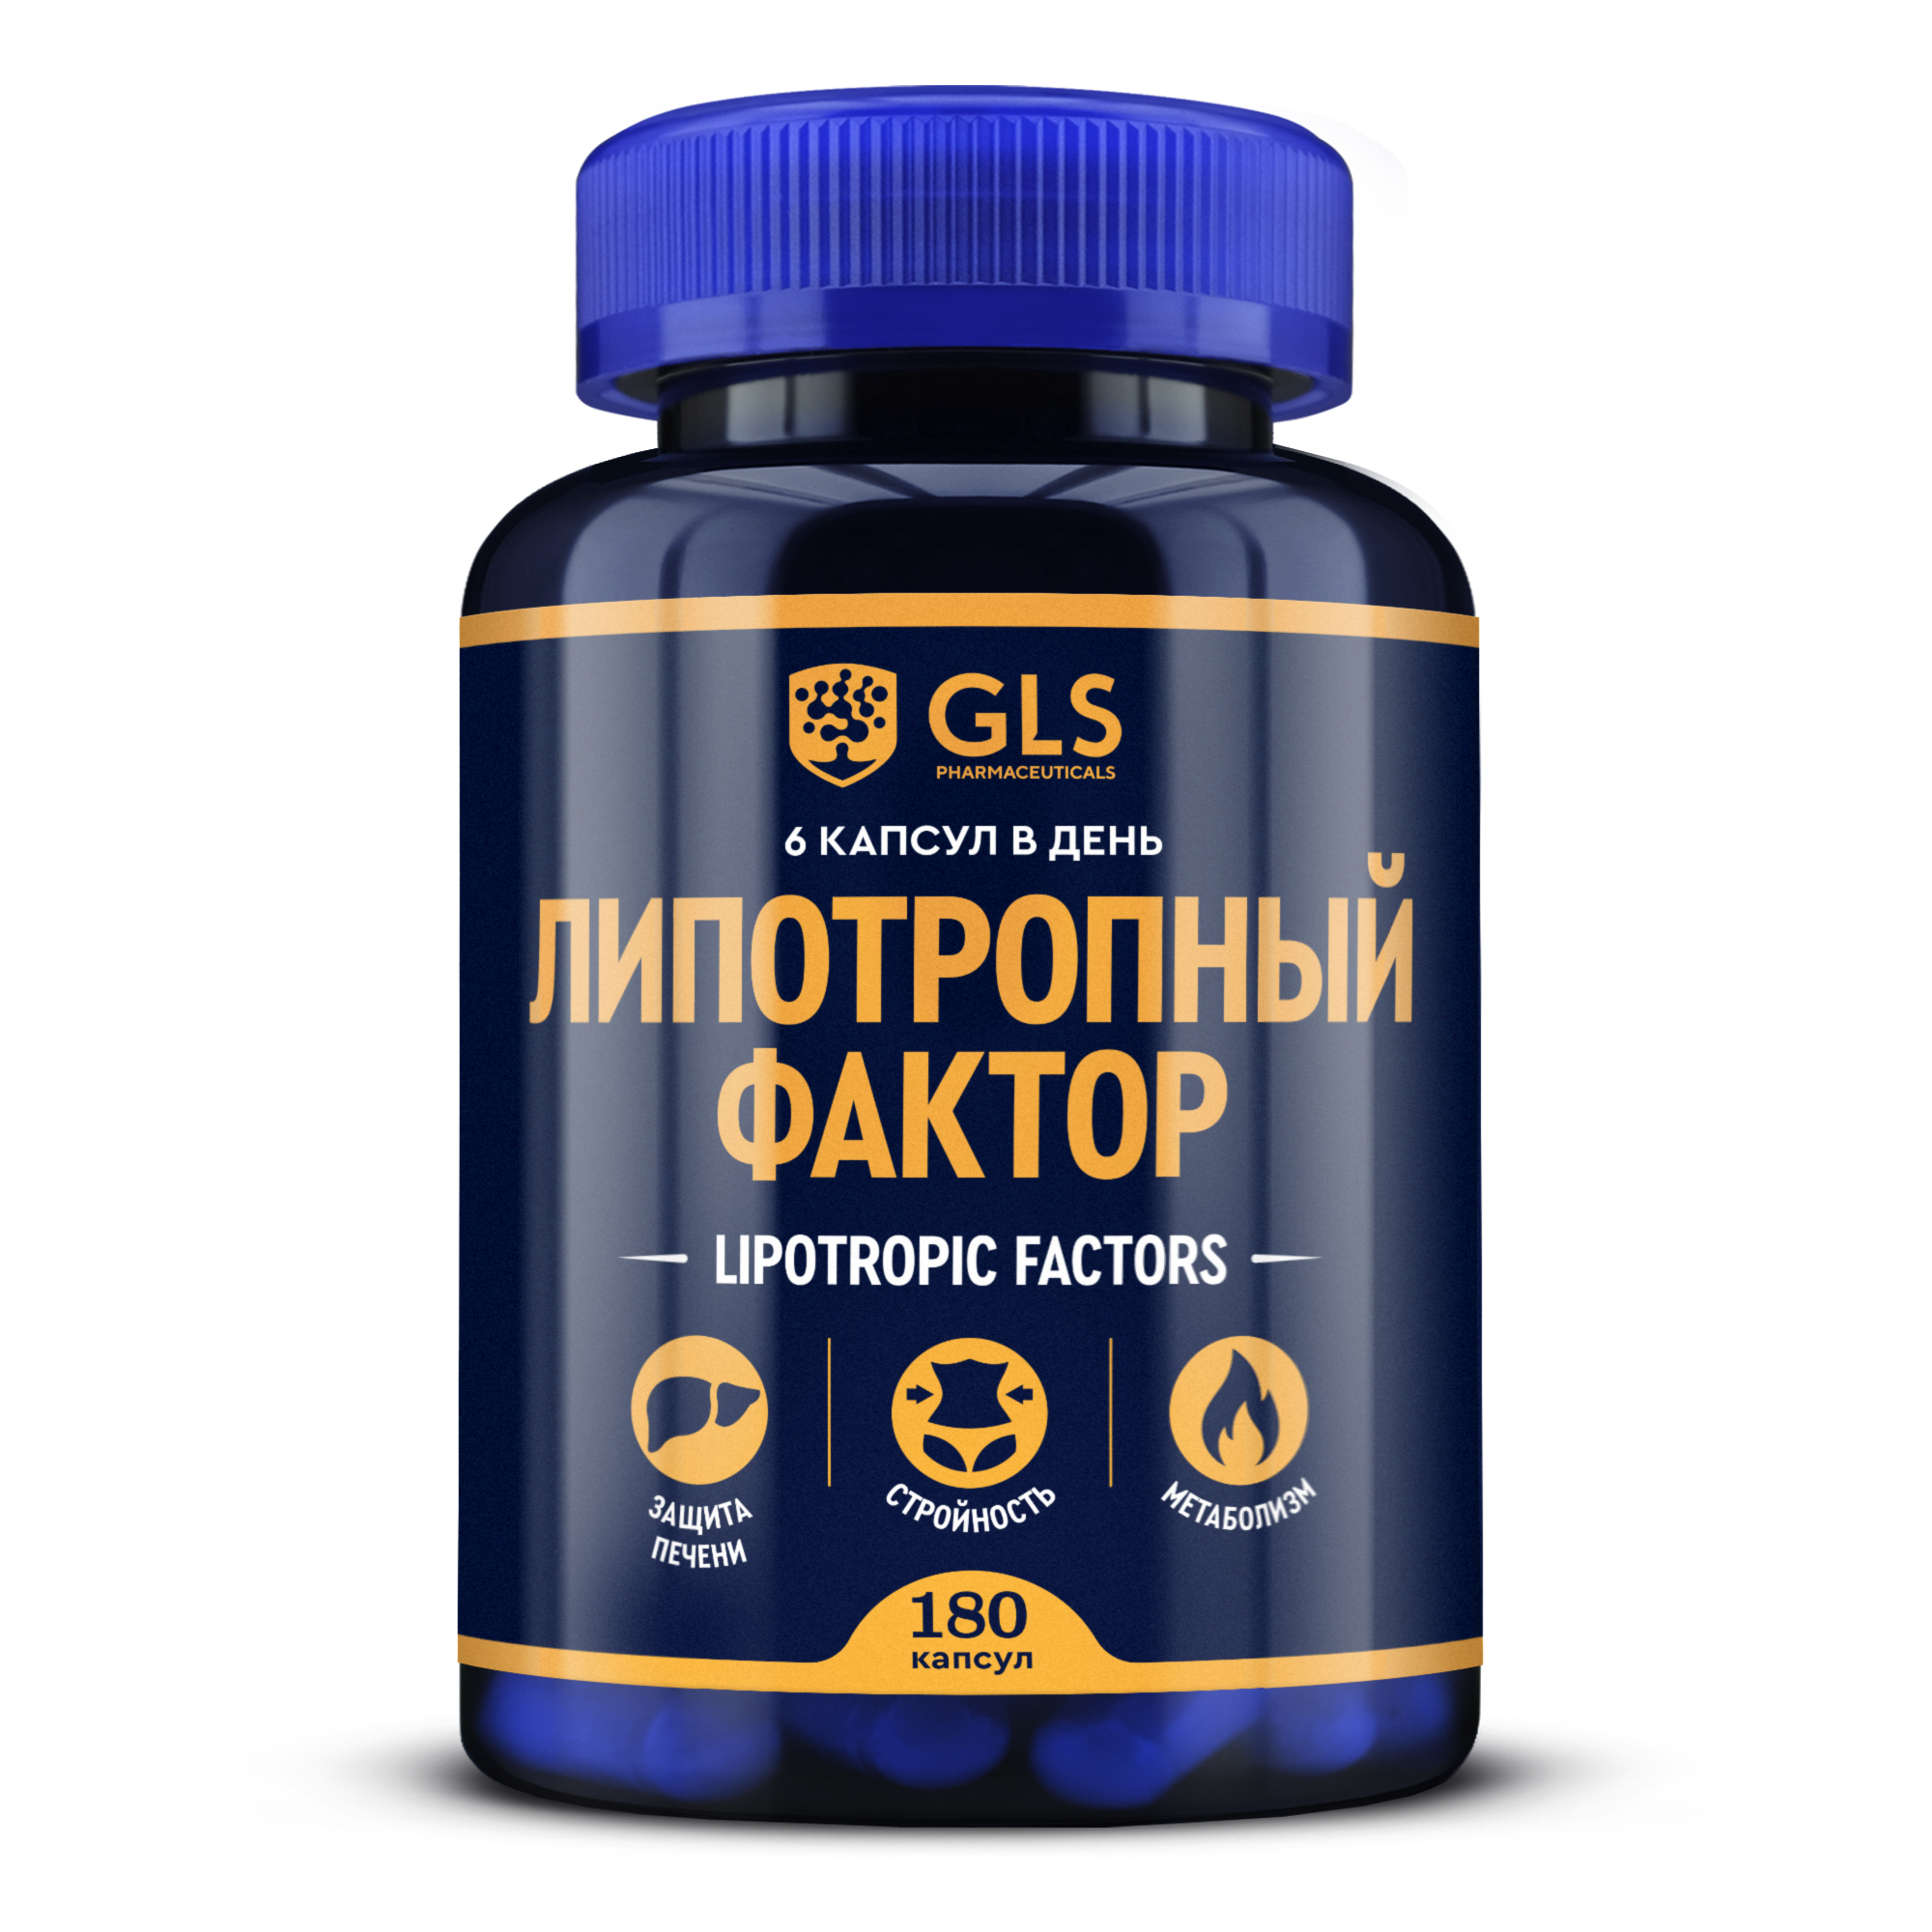 Витамины для похудения GLS Липотропный фактор, капсулы 180 шт.